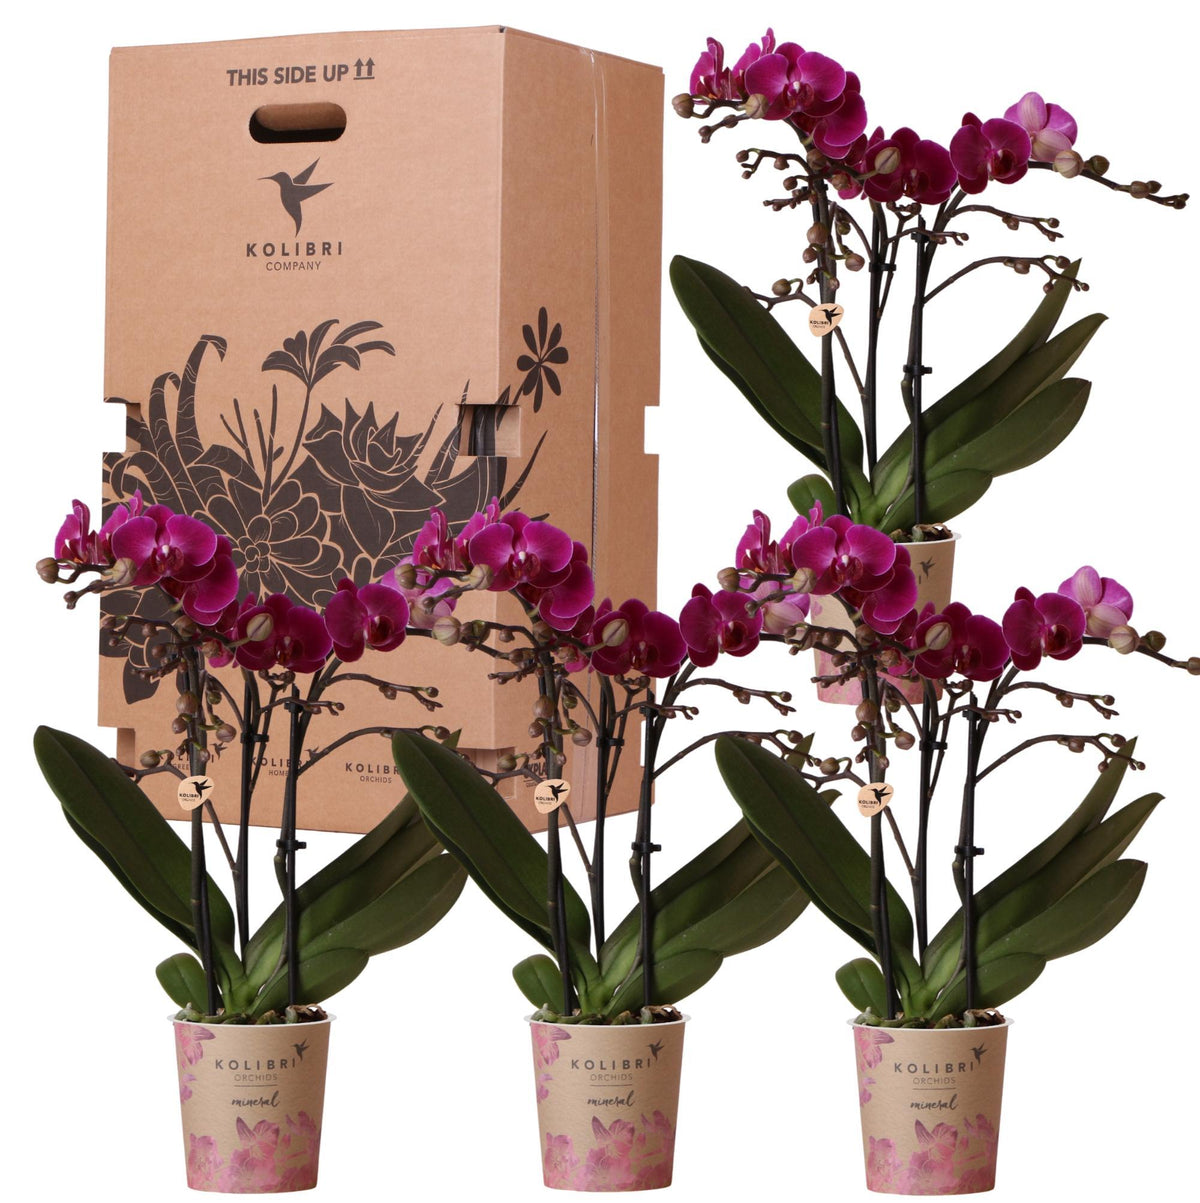 Box vol verrassende eenkleurige planten - voordelige orchideeëndoos met 4 unieke exemplaren - direct van de kweker